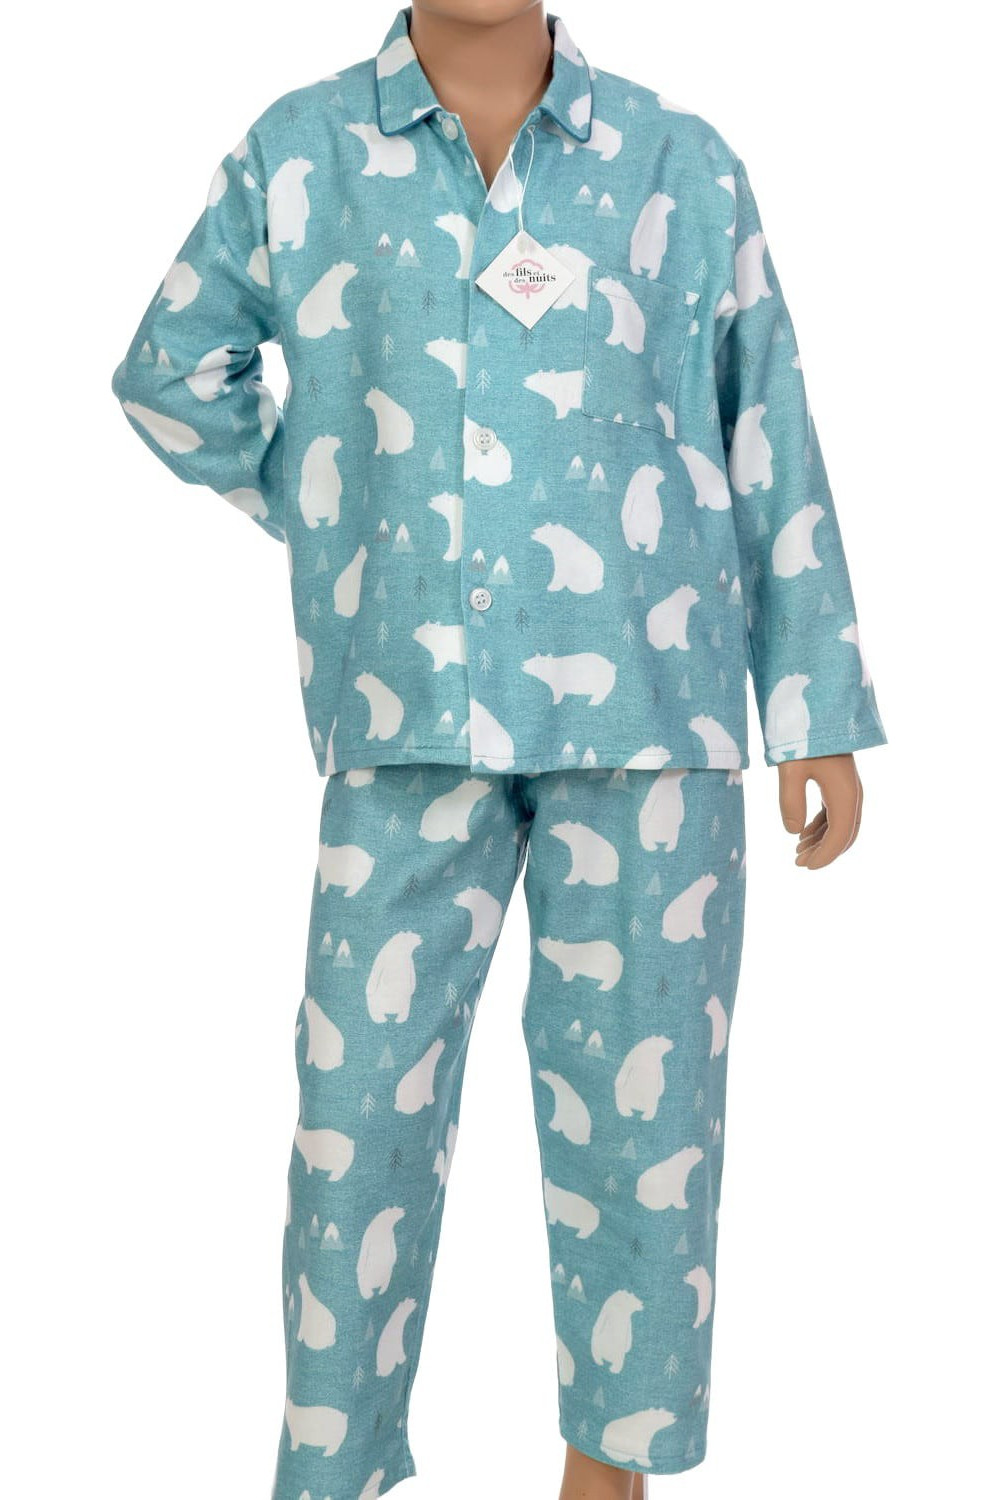 Pyjama long pour garçon en pilou-pilou, coloris Banquise 100% coton